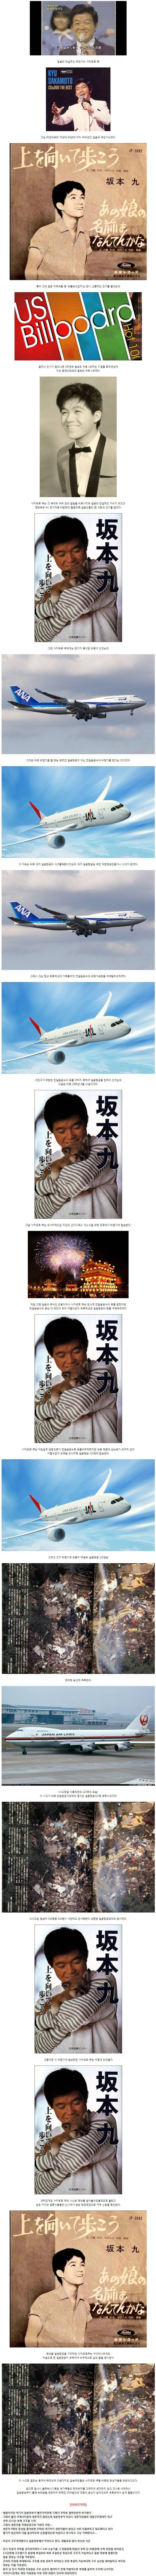 동양인 최초 빌보드 1위를 했던 일본 국민가수의 비극.jpg | 인스티즈